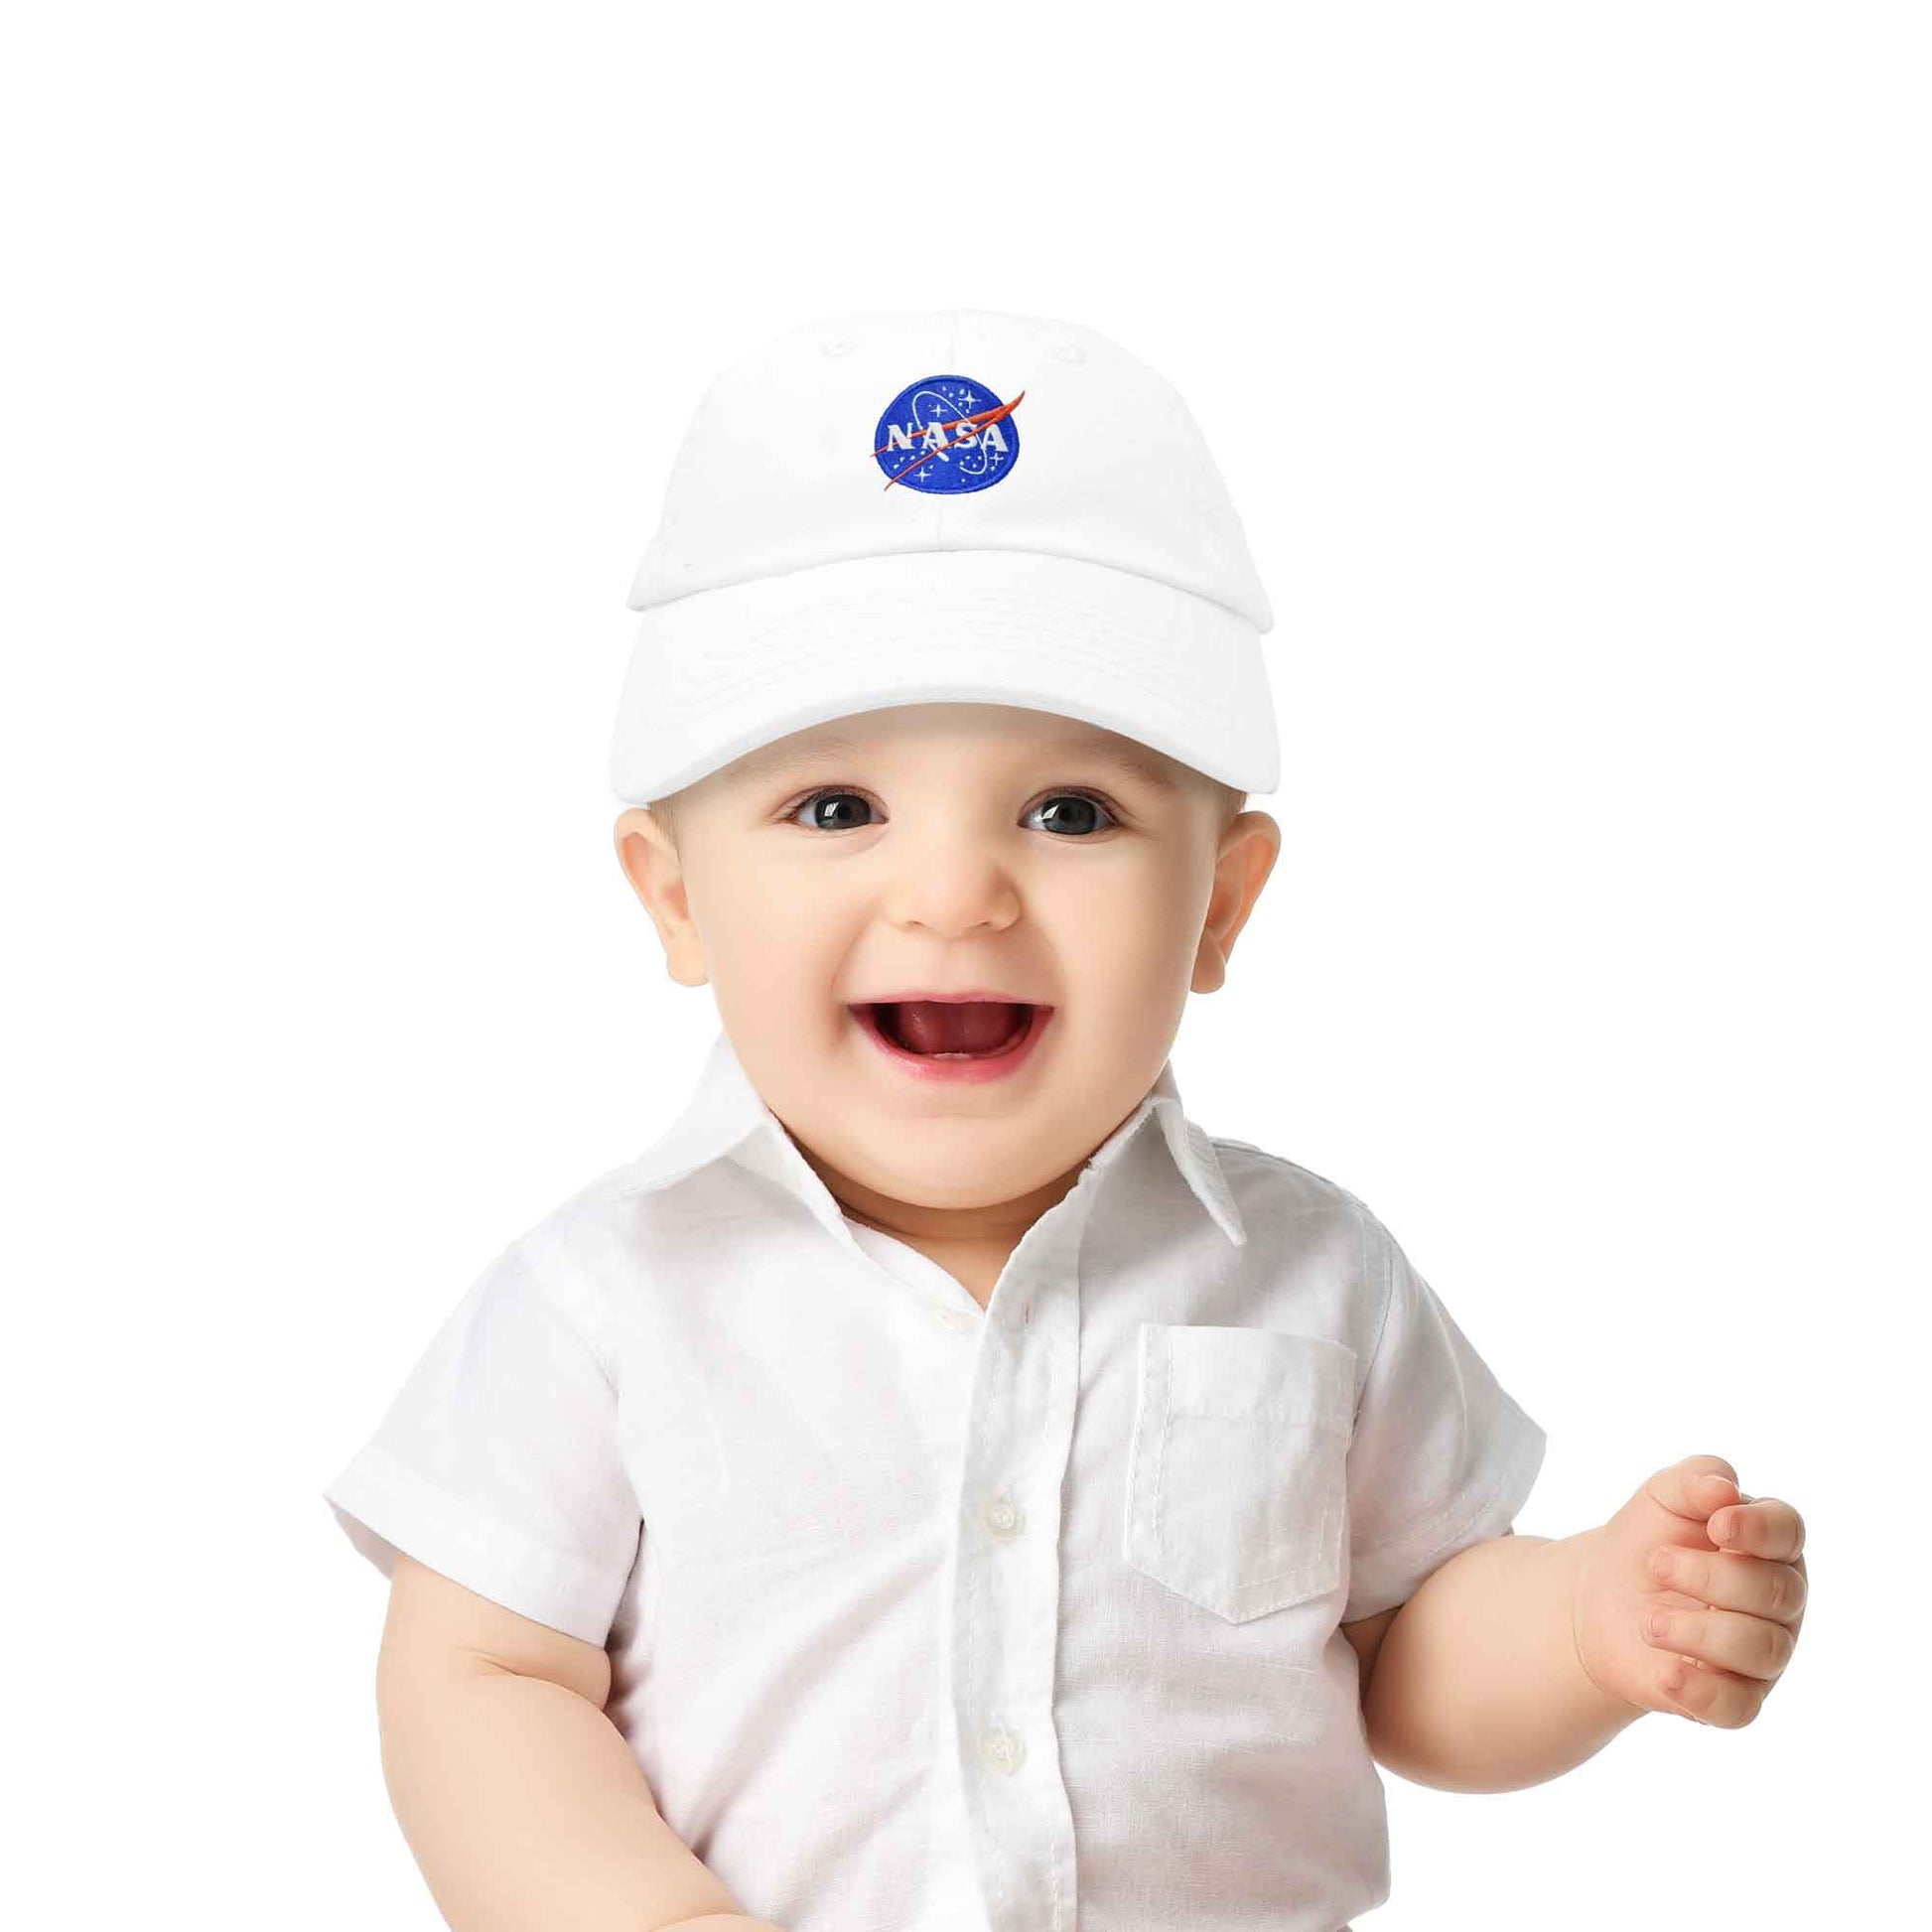 BABY NASA